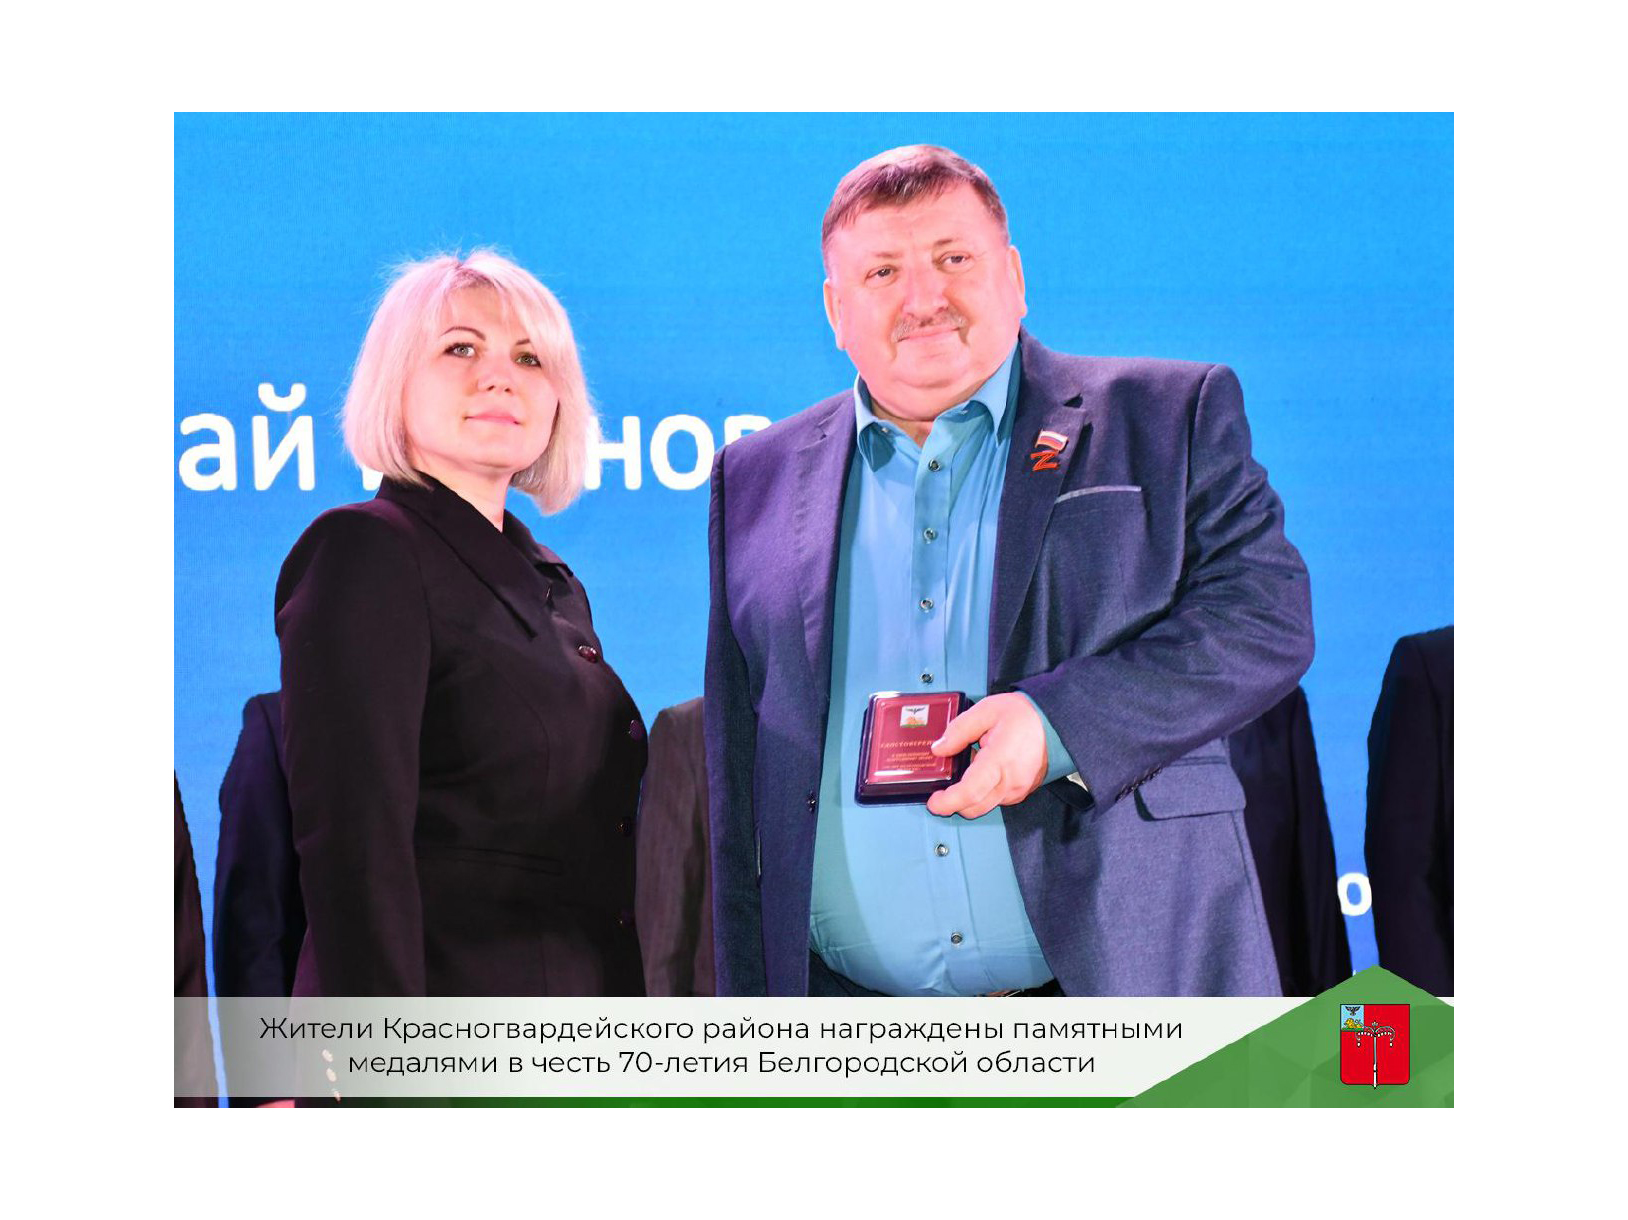 Жители Красногвардейского района награждены памятными медалями в честь 70-летнего юбилея Белгородской области.